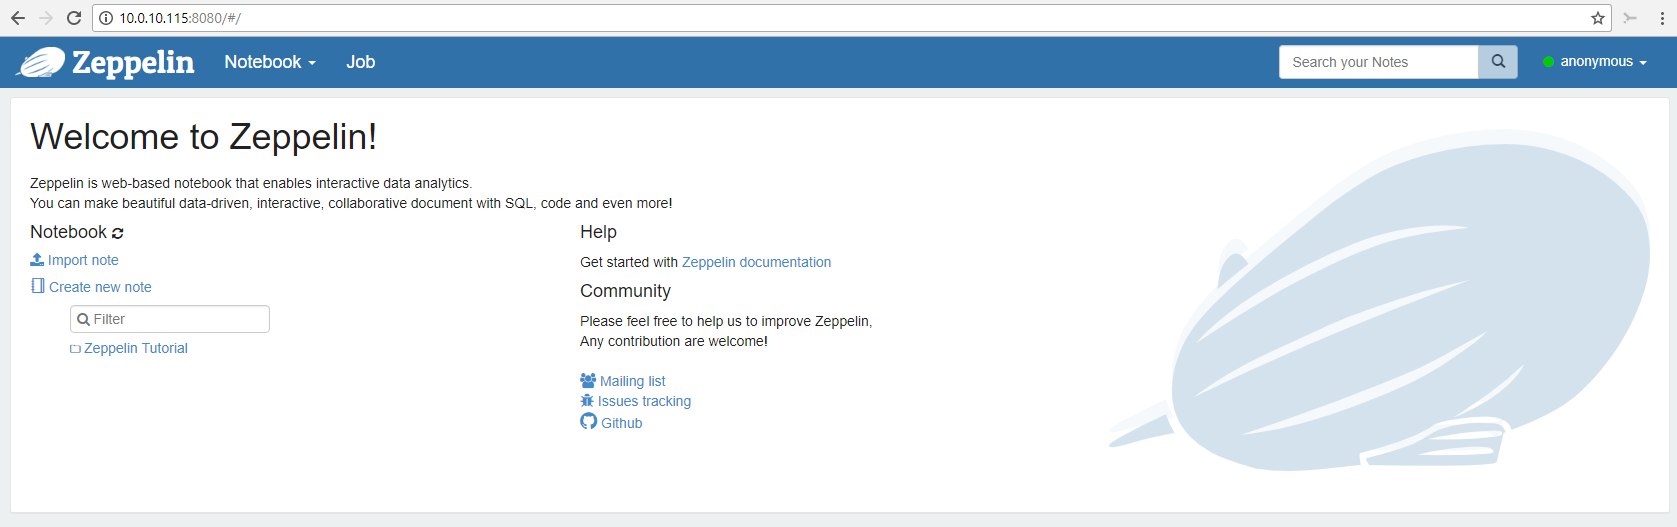 TechBuilders - Apache Zeppelin